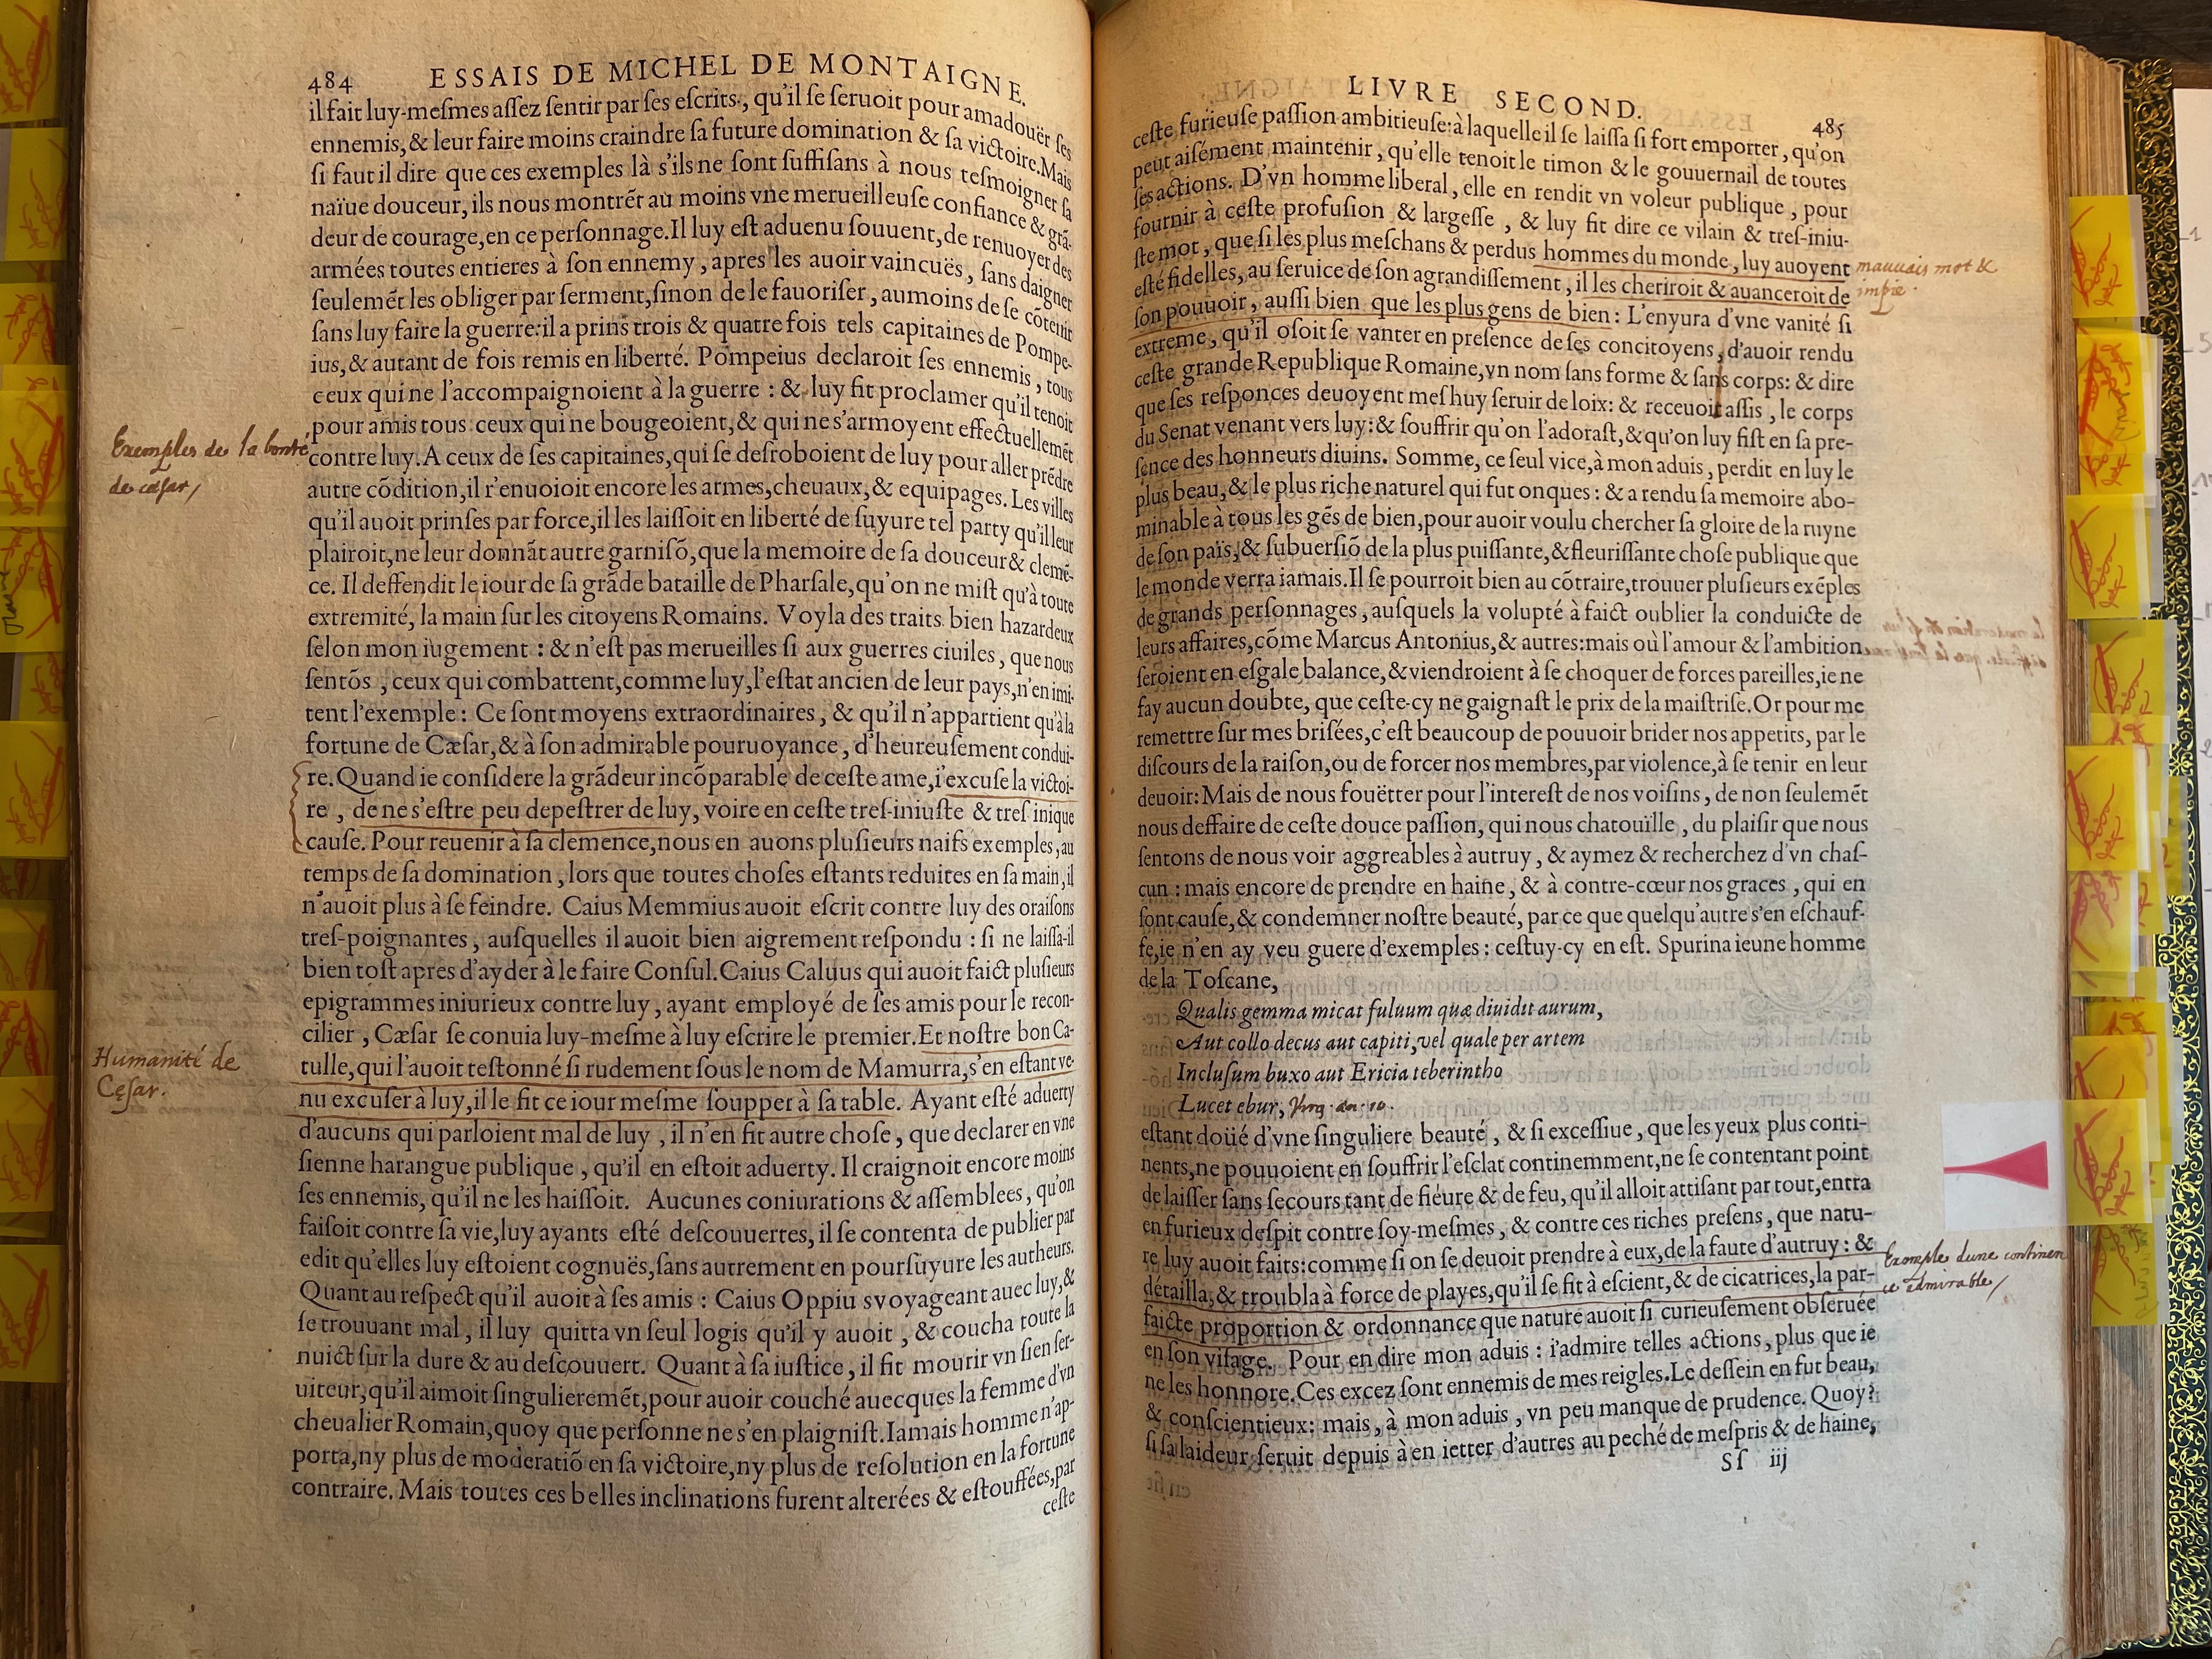 14. - p. 484-485, Livre II. Les Essais, 1595. Exemplaire Laval.